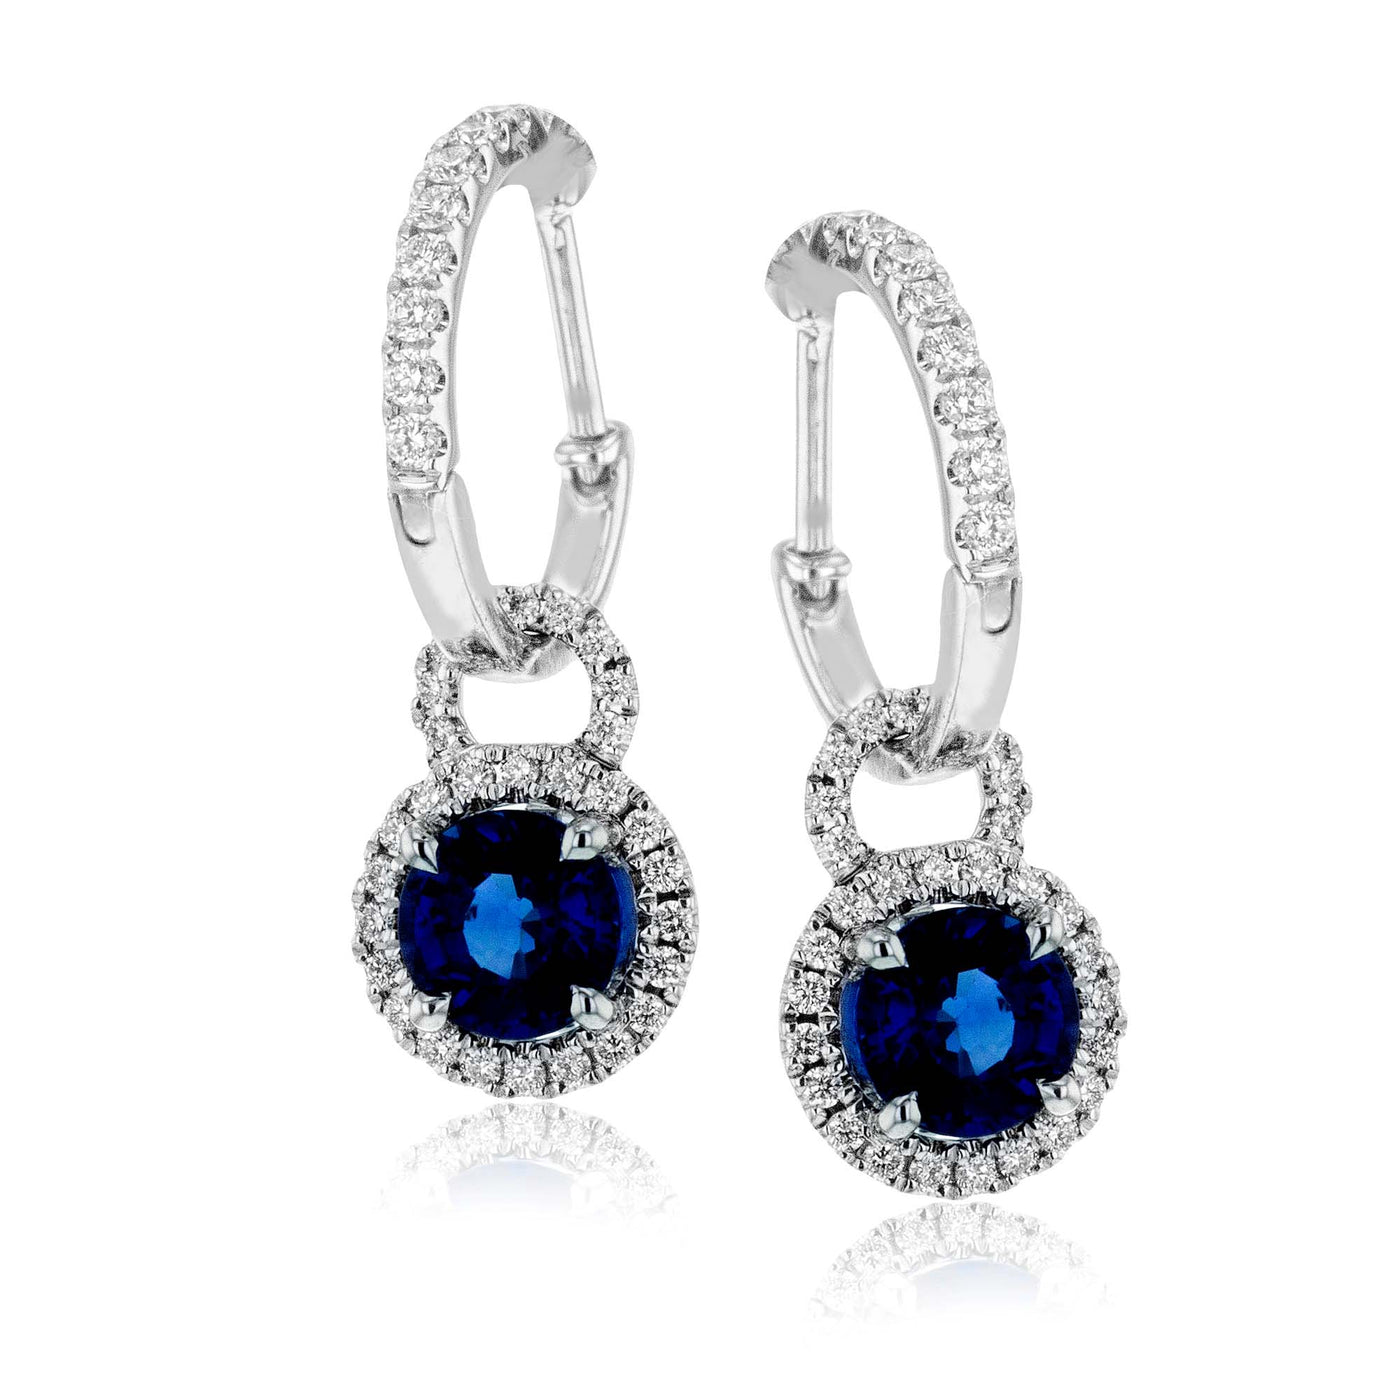 Simon G Jewelry 18 KT White Gold Drop Earrings Gemstone Earrings LME1566